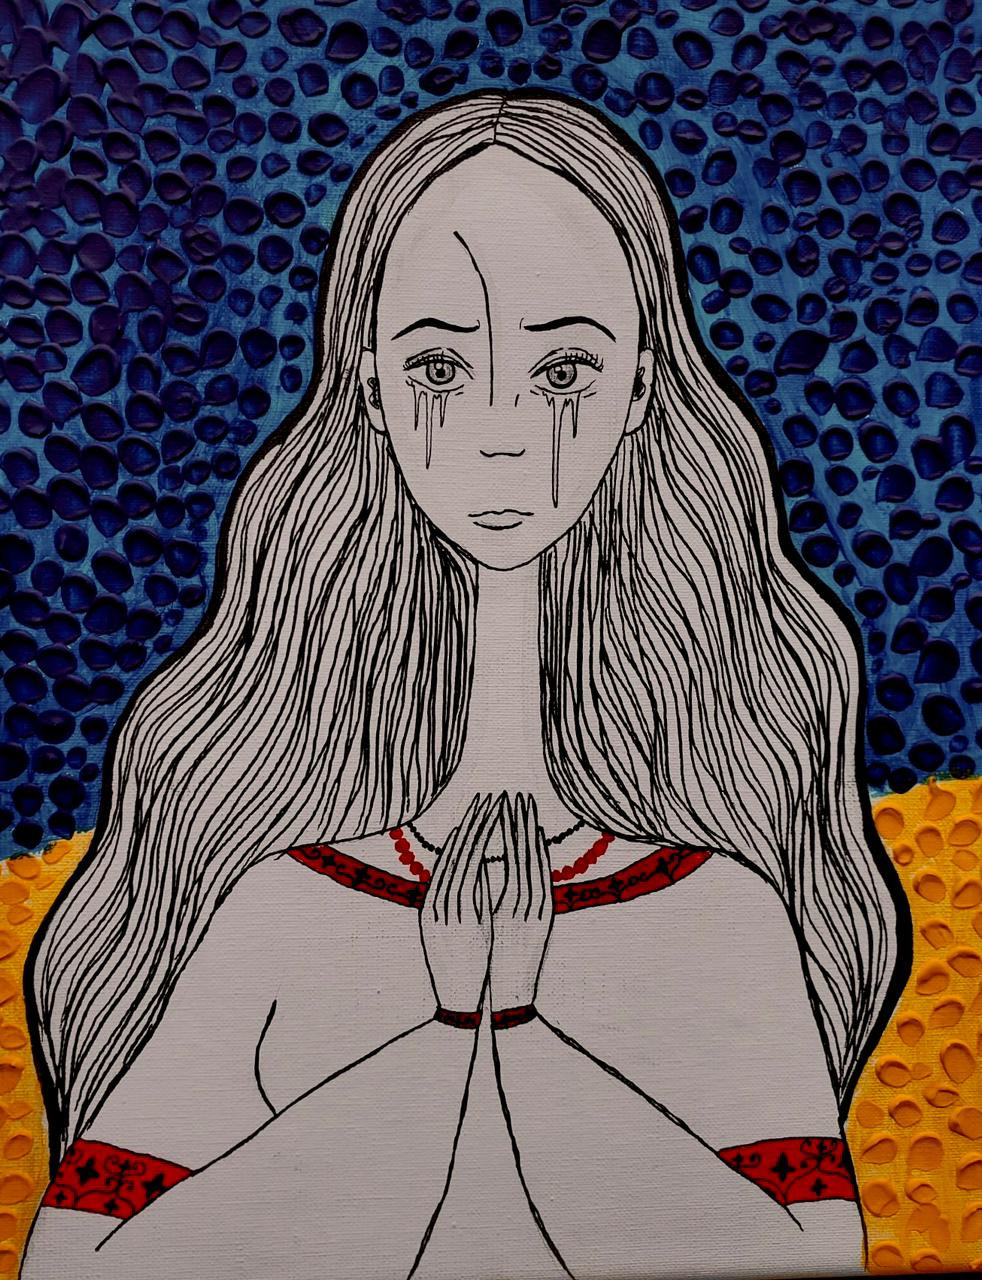 Płacząca kobieta na niebiesko-żółtym tle